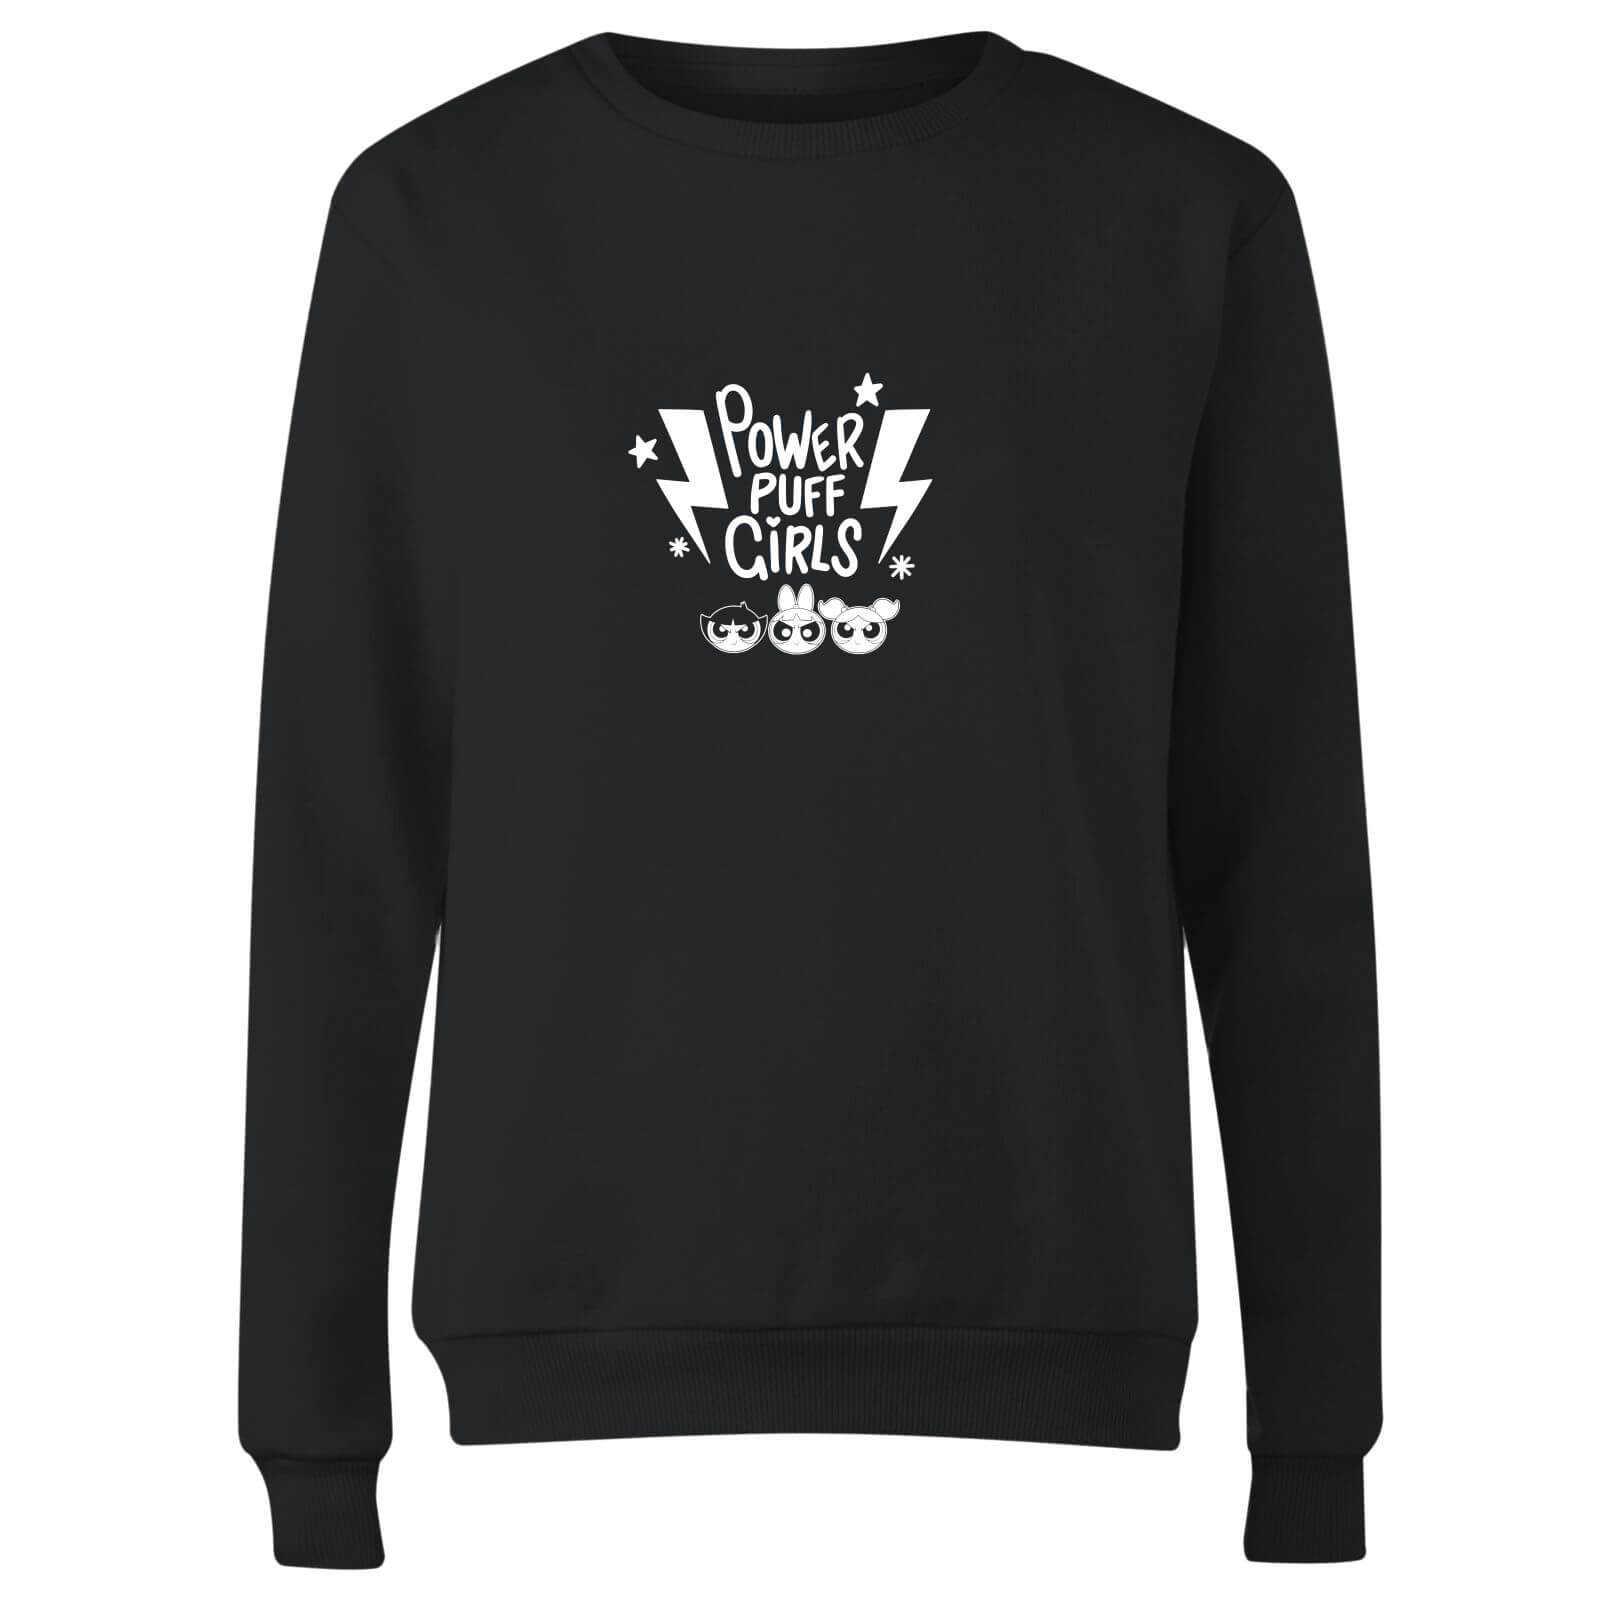 The Powerpuff Girls Thunderbolts Sweater Women's Sweatshirt - Black - XS